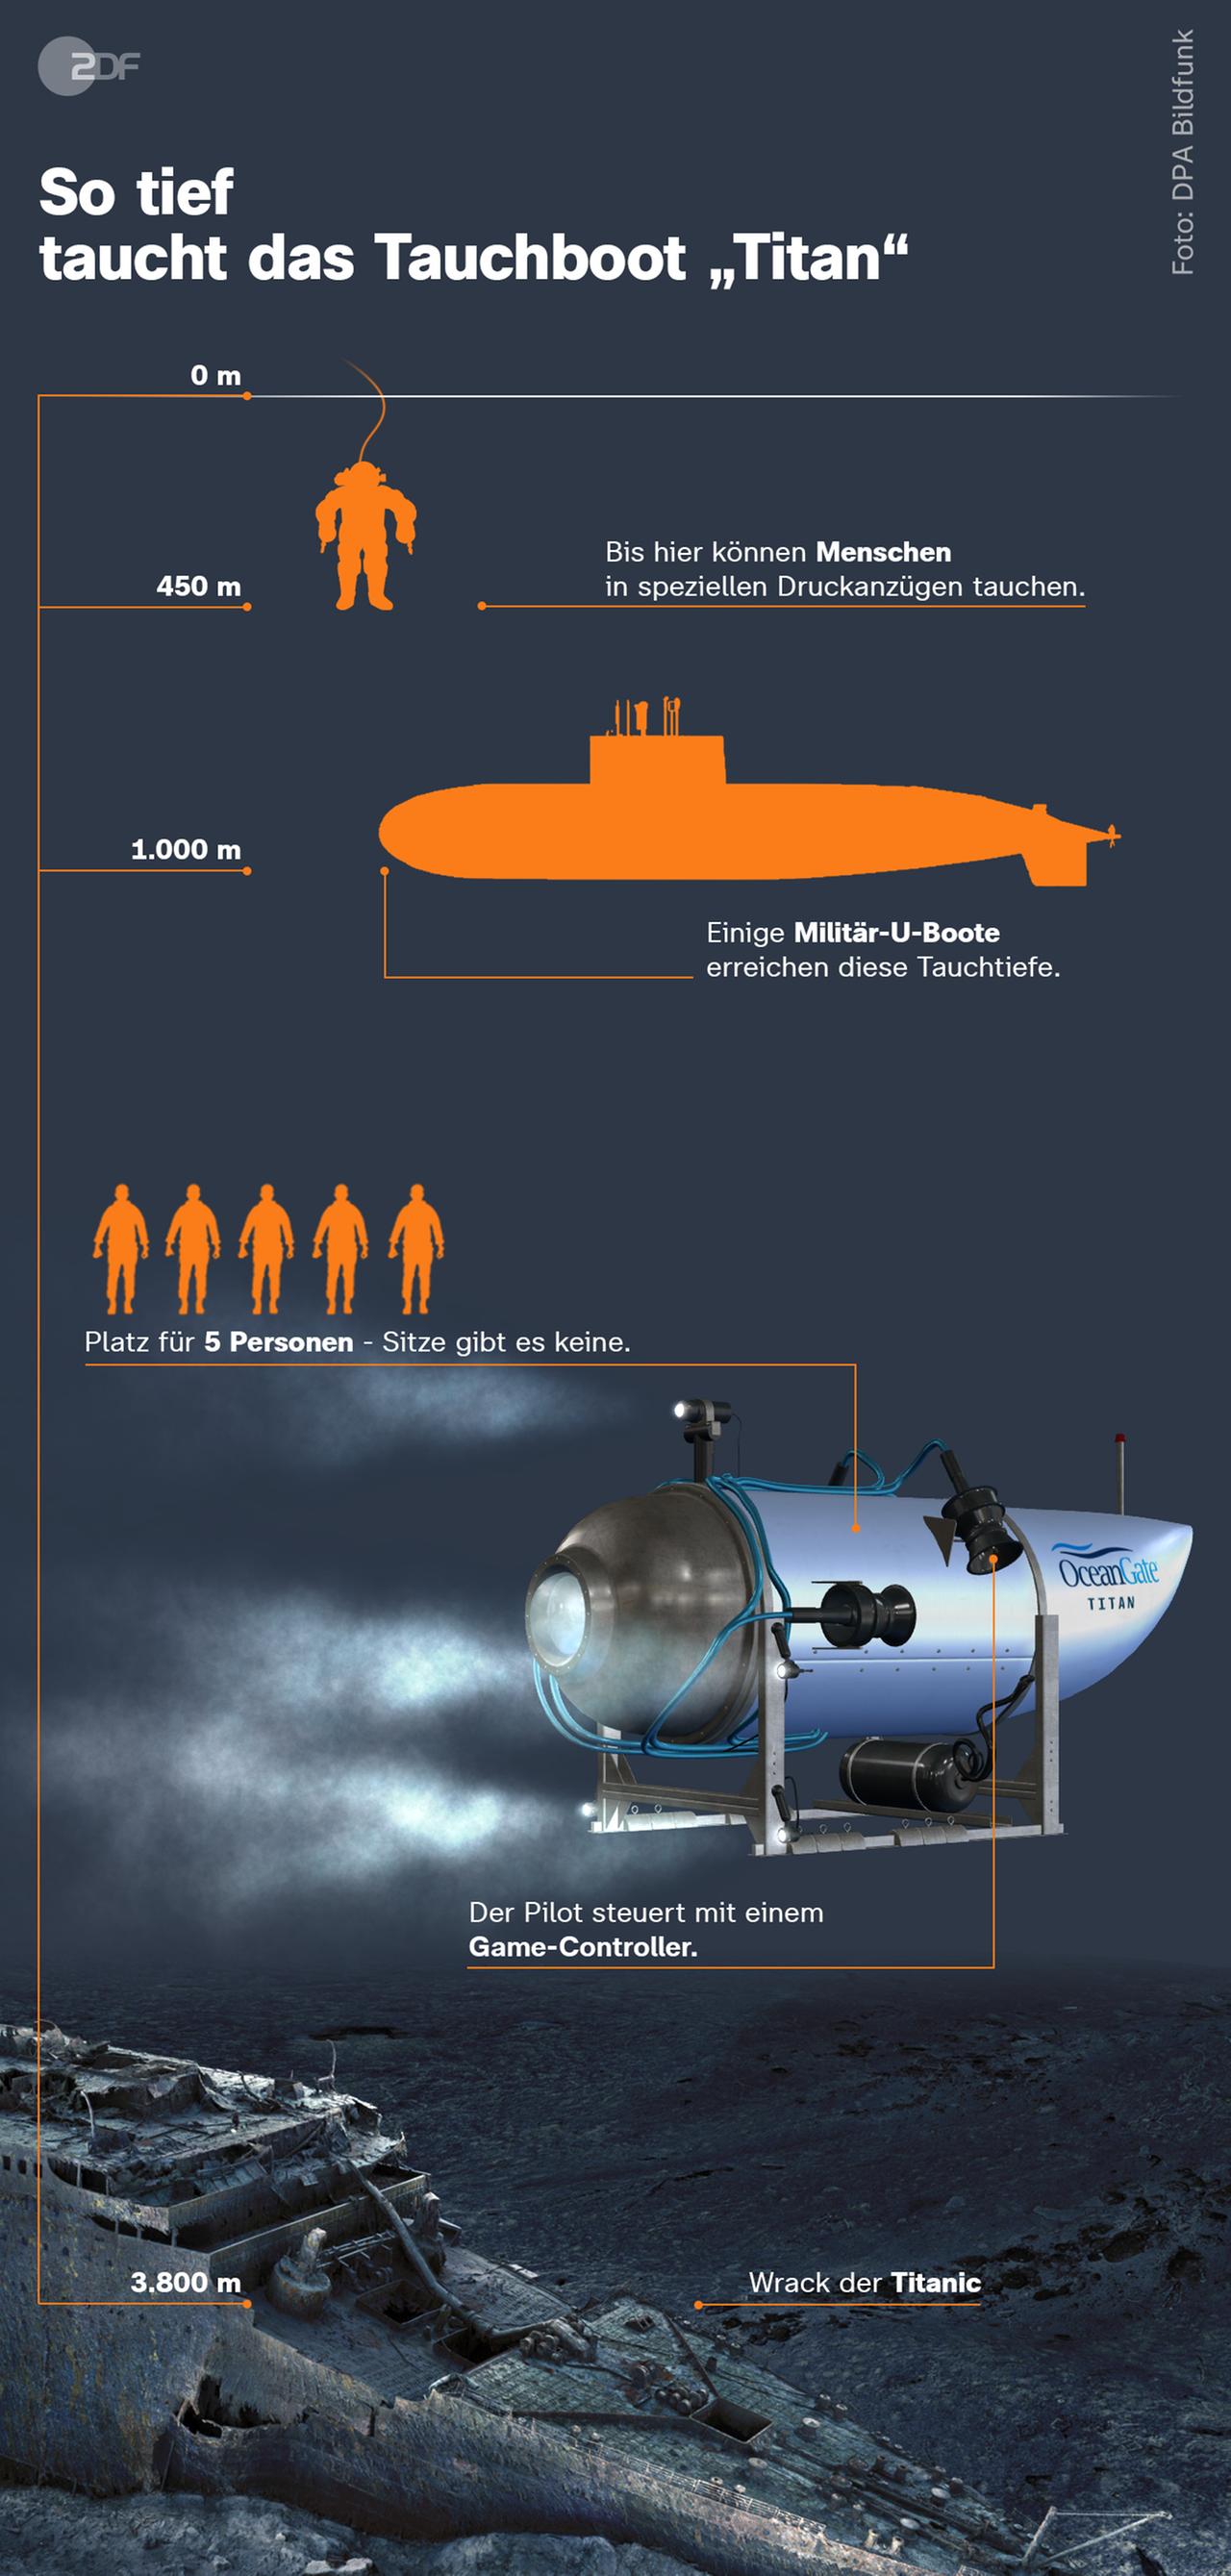 In der Infografik wird gezeigt, wie tief das Tauchboot "Titan" im Vergleich zum Menschen und Militär-U-Booten tauchen kann. Der Mensch kann in speziellen Druckanzügen bis zu 460 Meter tief tauchen. Einige Militär-U-Boote bis zu 1.000 Metern. Das Ziel des Tauchboots Titan - das Wrack der Titanic - liegt in 3.800 Metern Tiefe. 